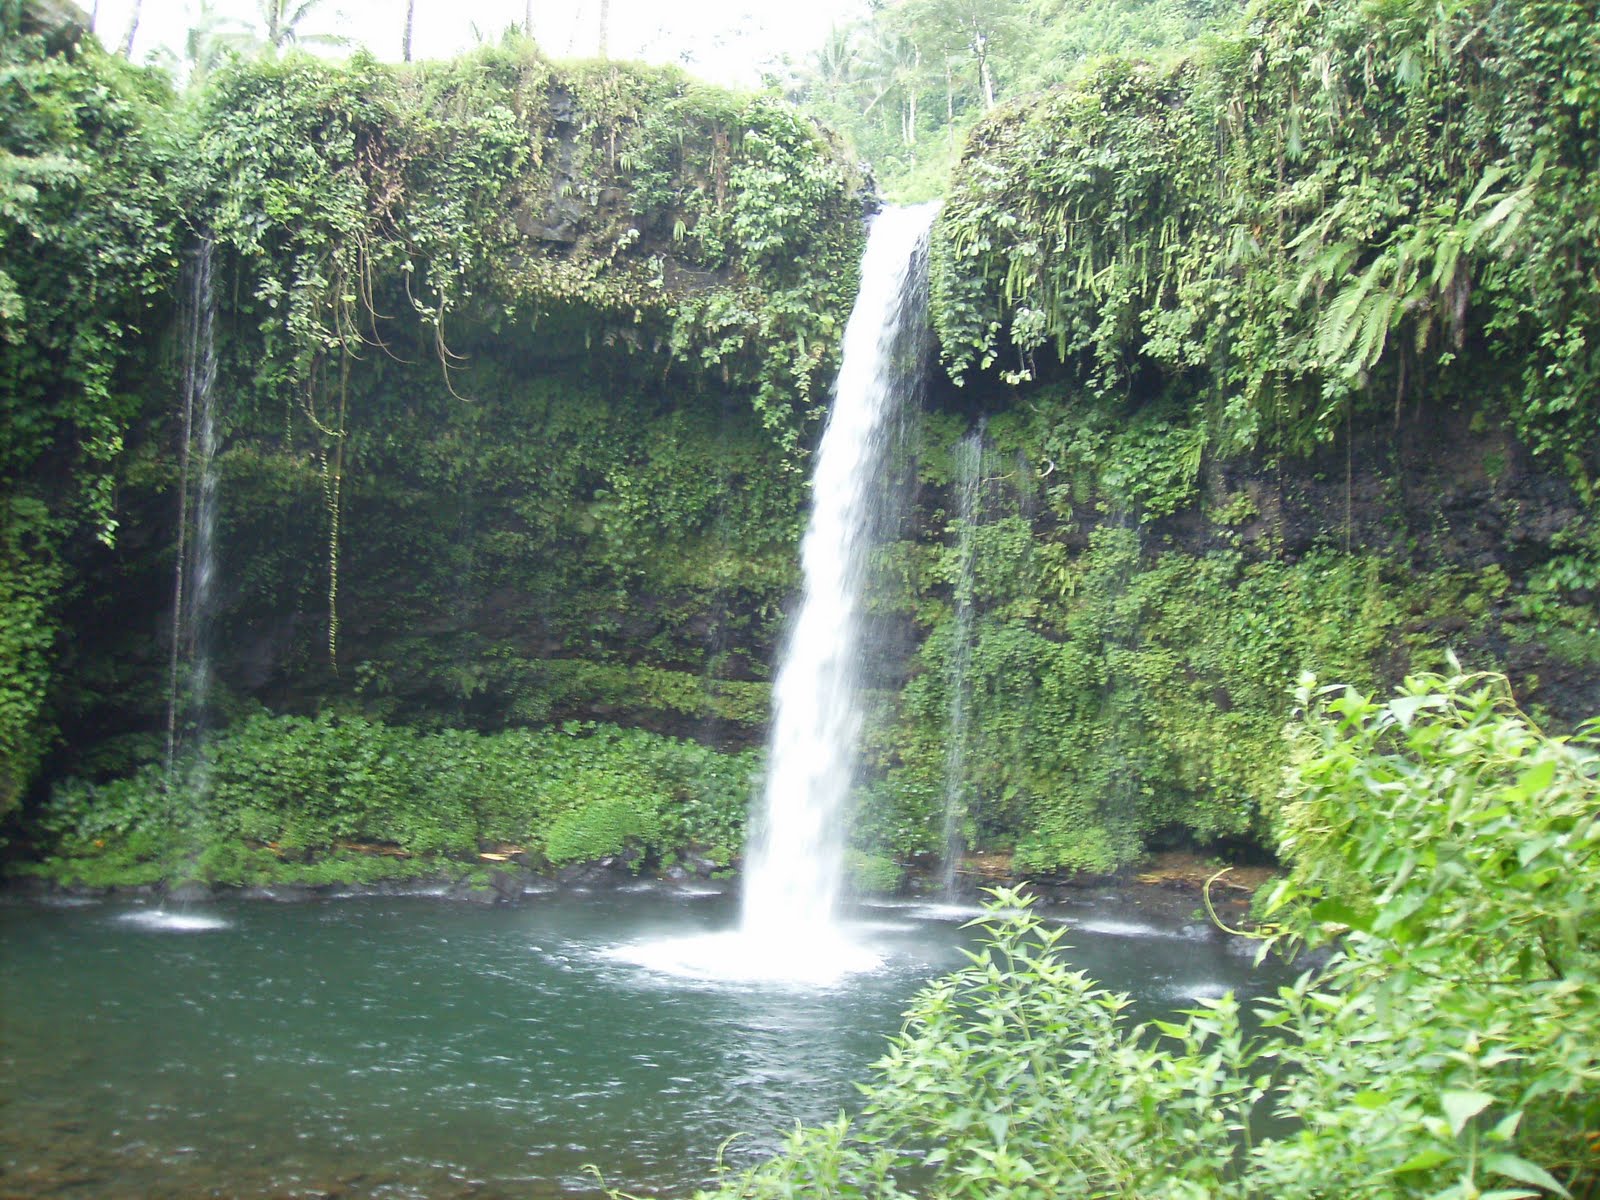 Baturaden Waterfall, Banyumas - Central Java